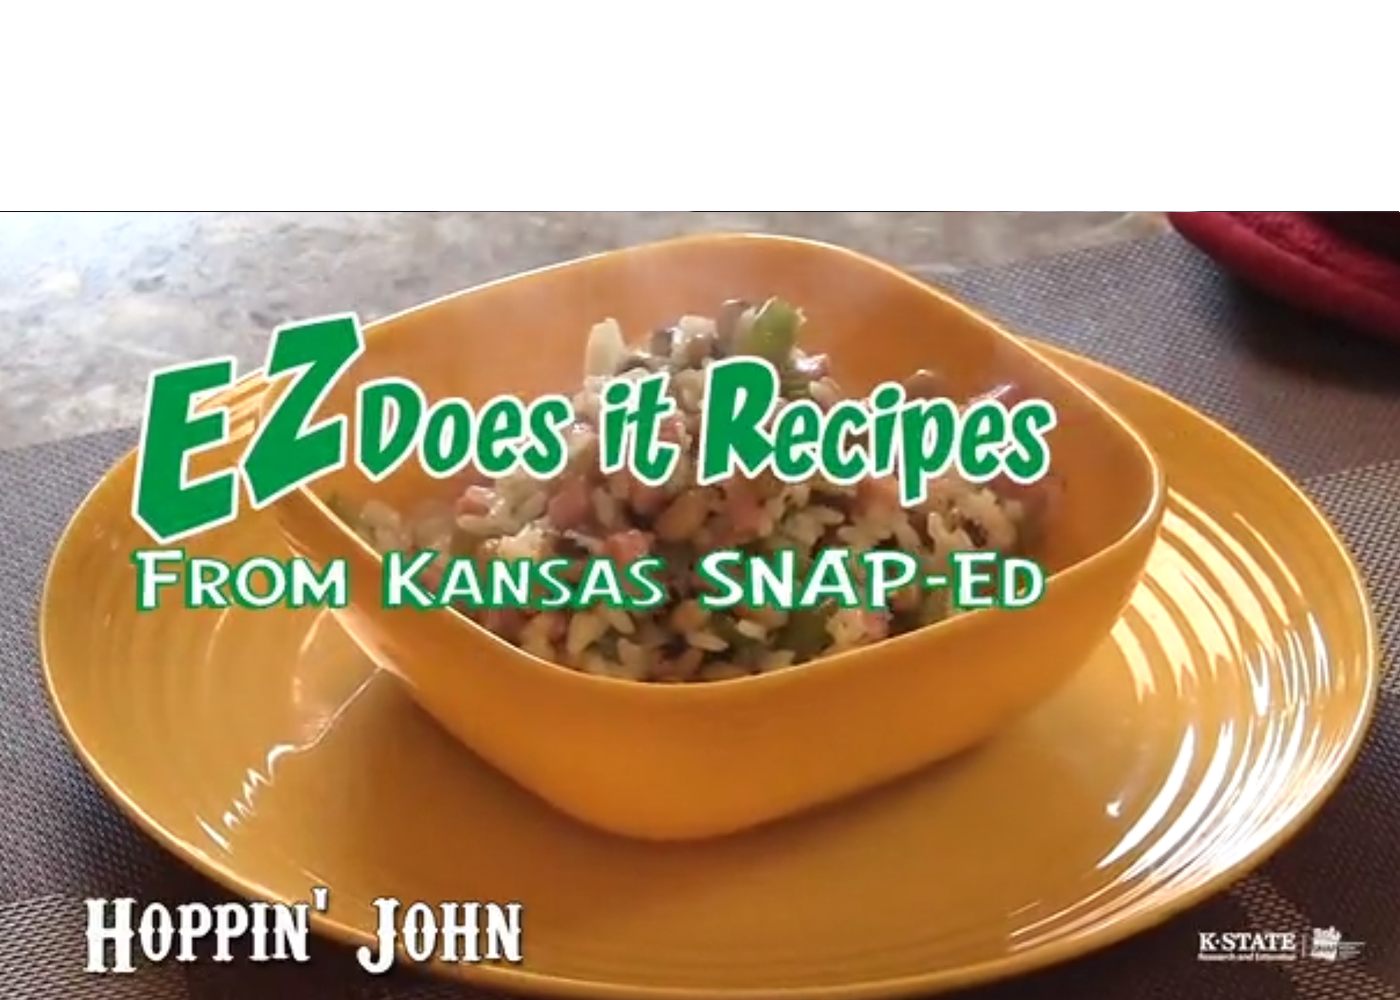 EZ Does It Recipes from Kansas SNAP-Ed with a bowl of Hoppin' John